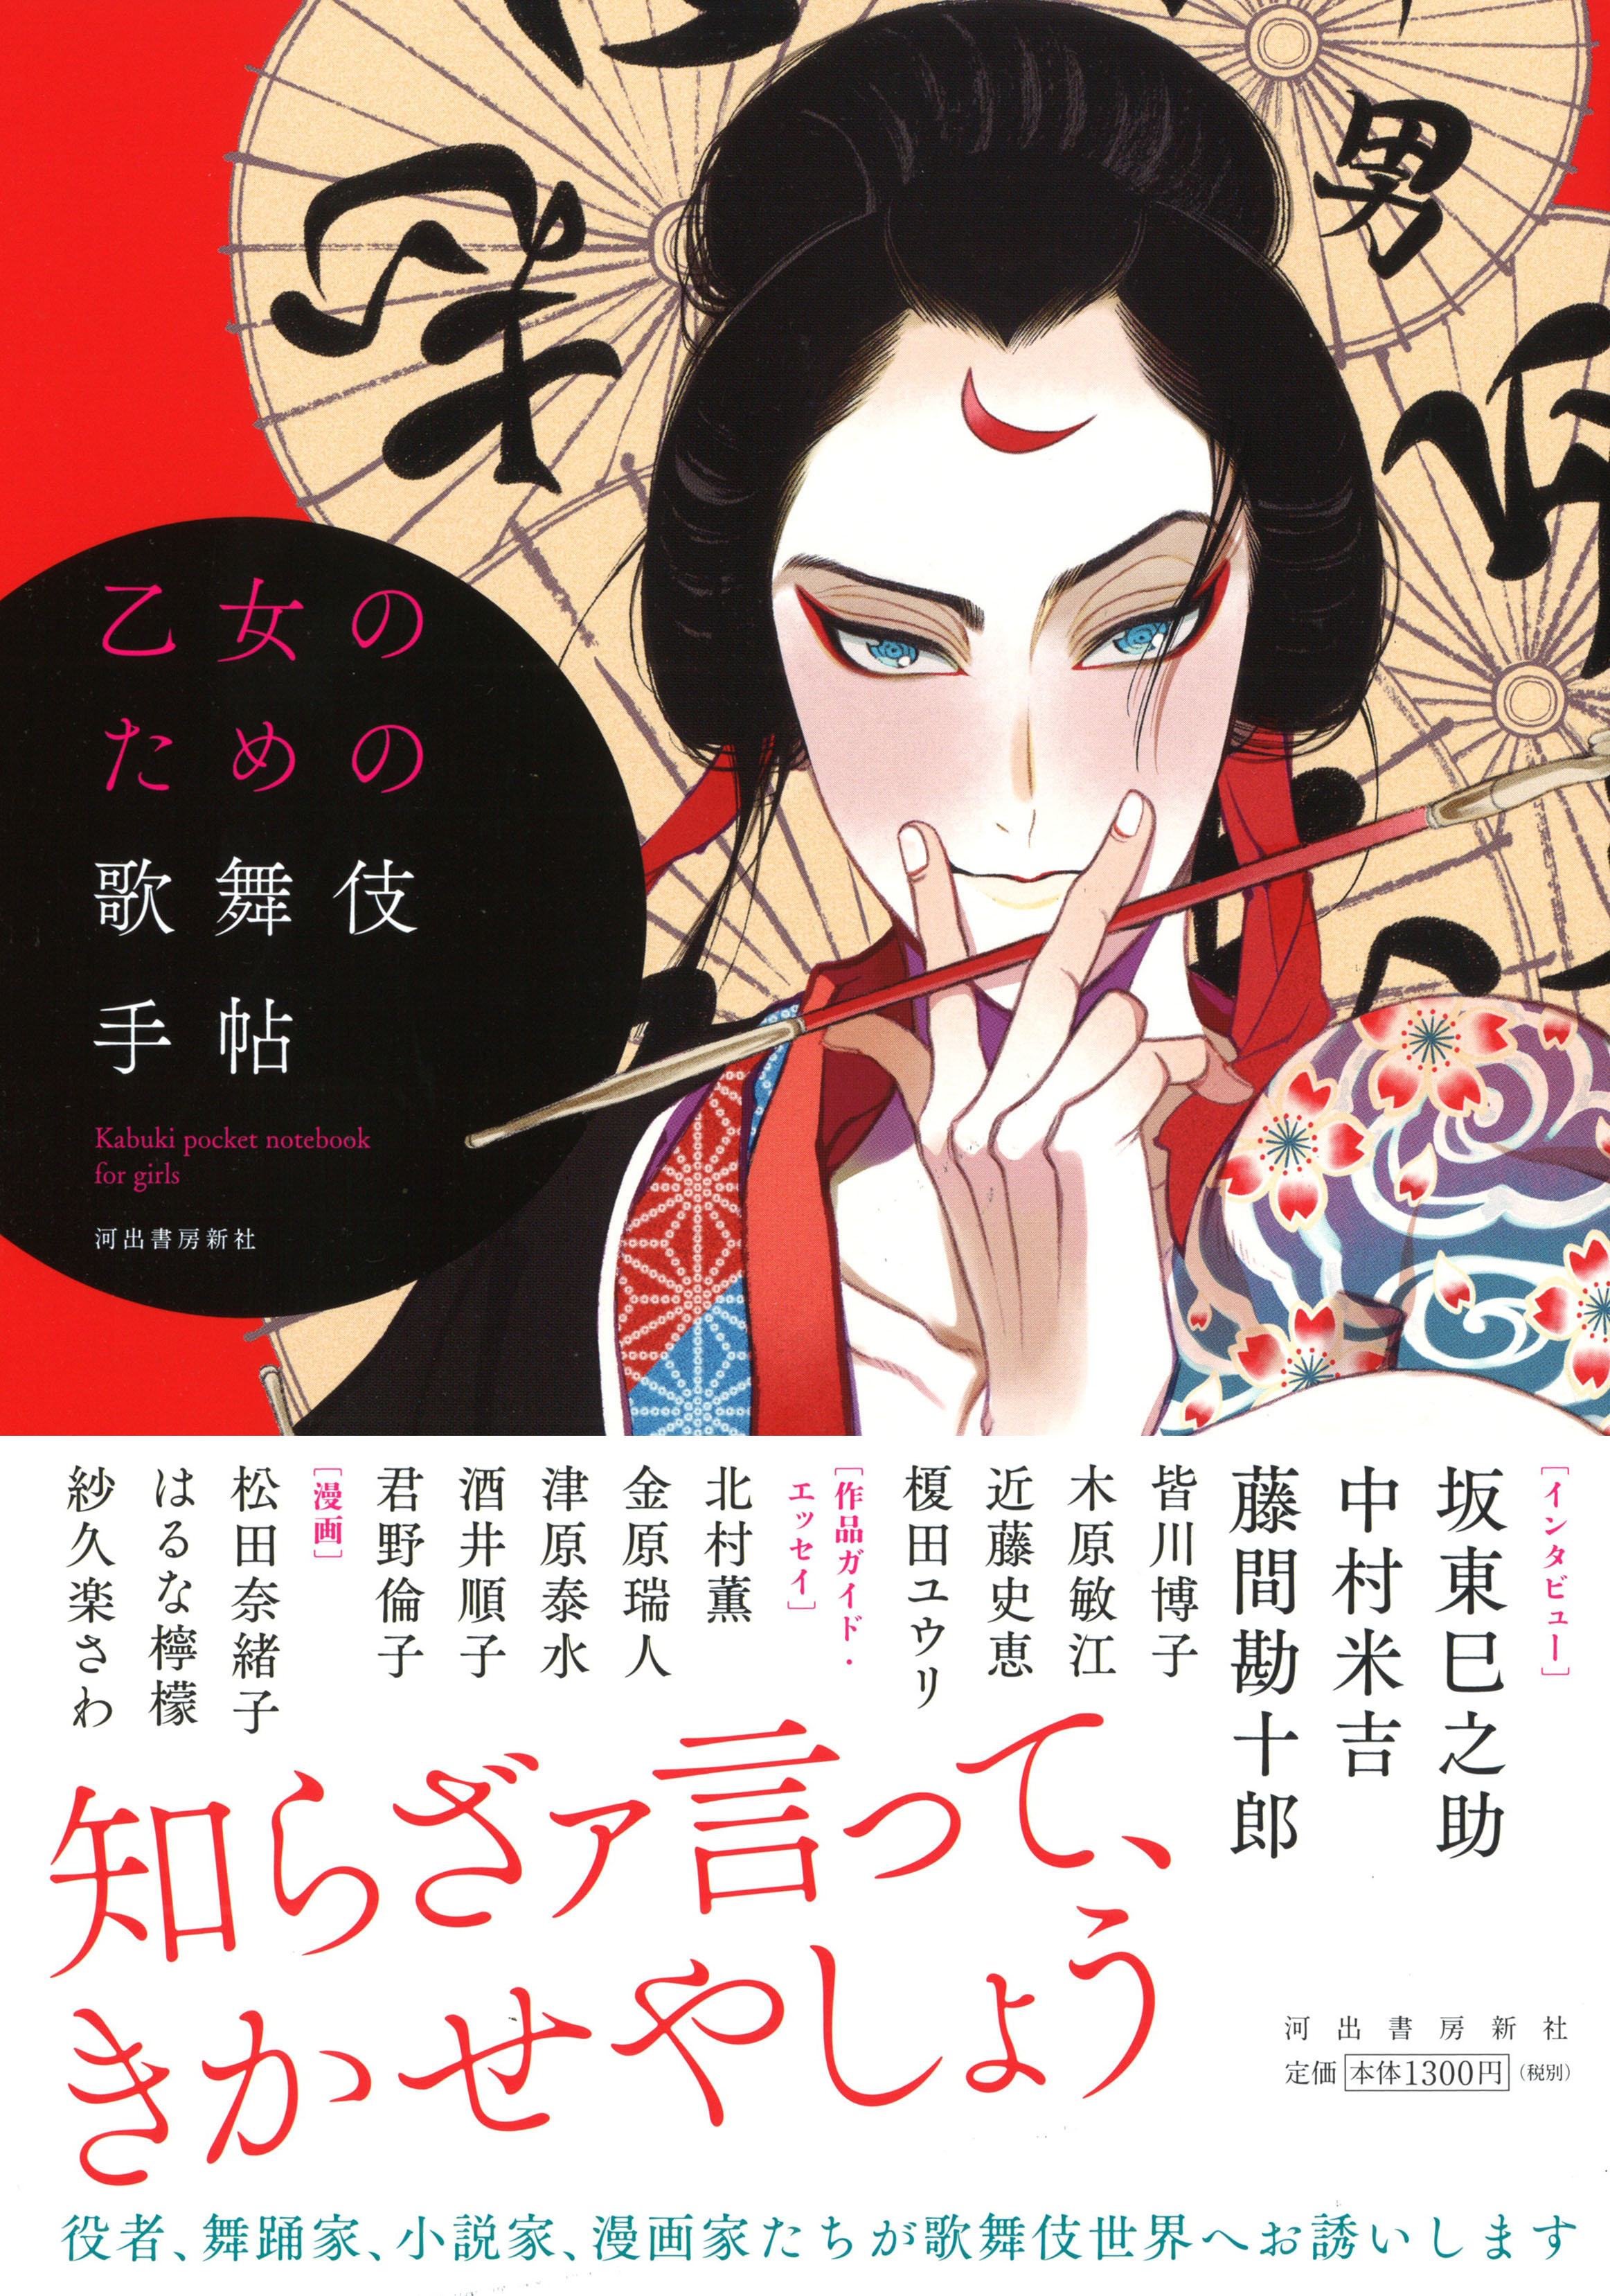 役者 舞踊家 小説家 漫画家たちが歌舞伎世界へお誘いします 乙女のための歌舞伎手帖 刊行 Web河出